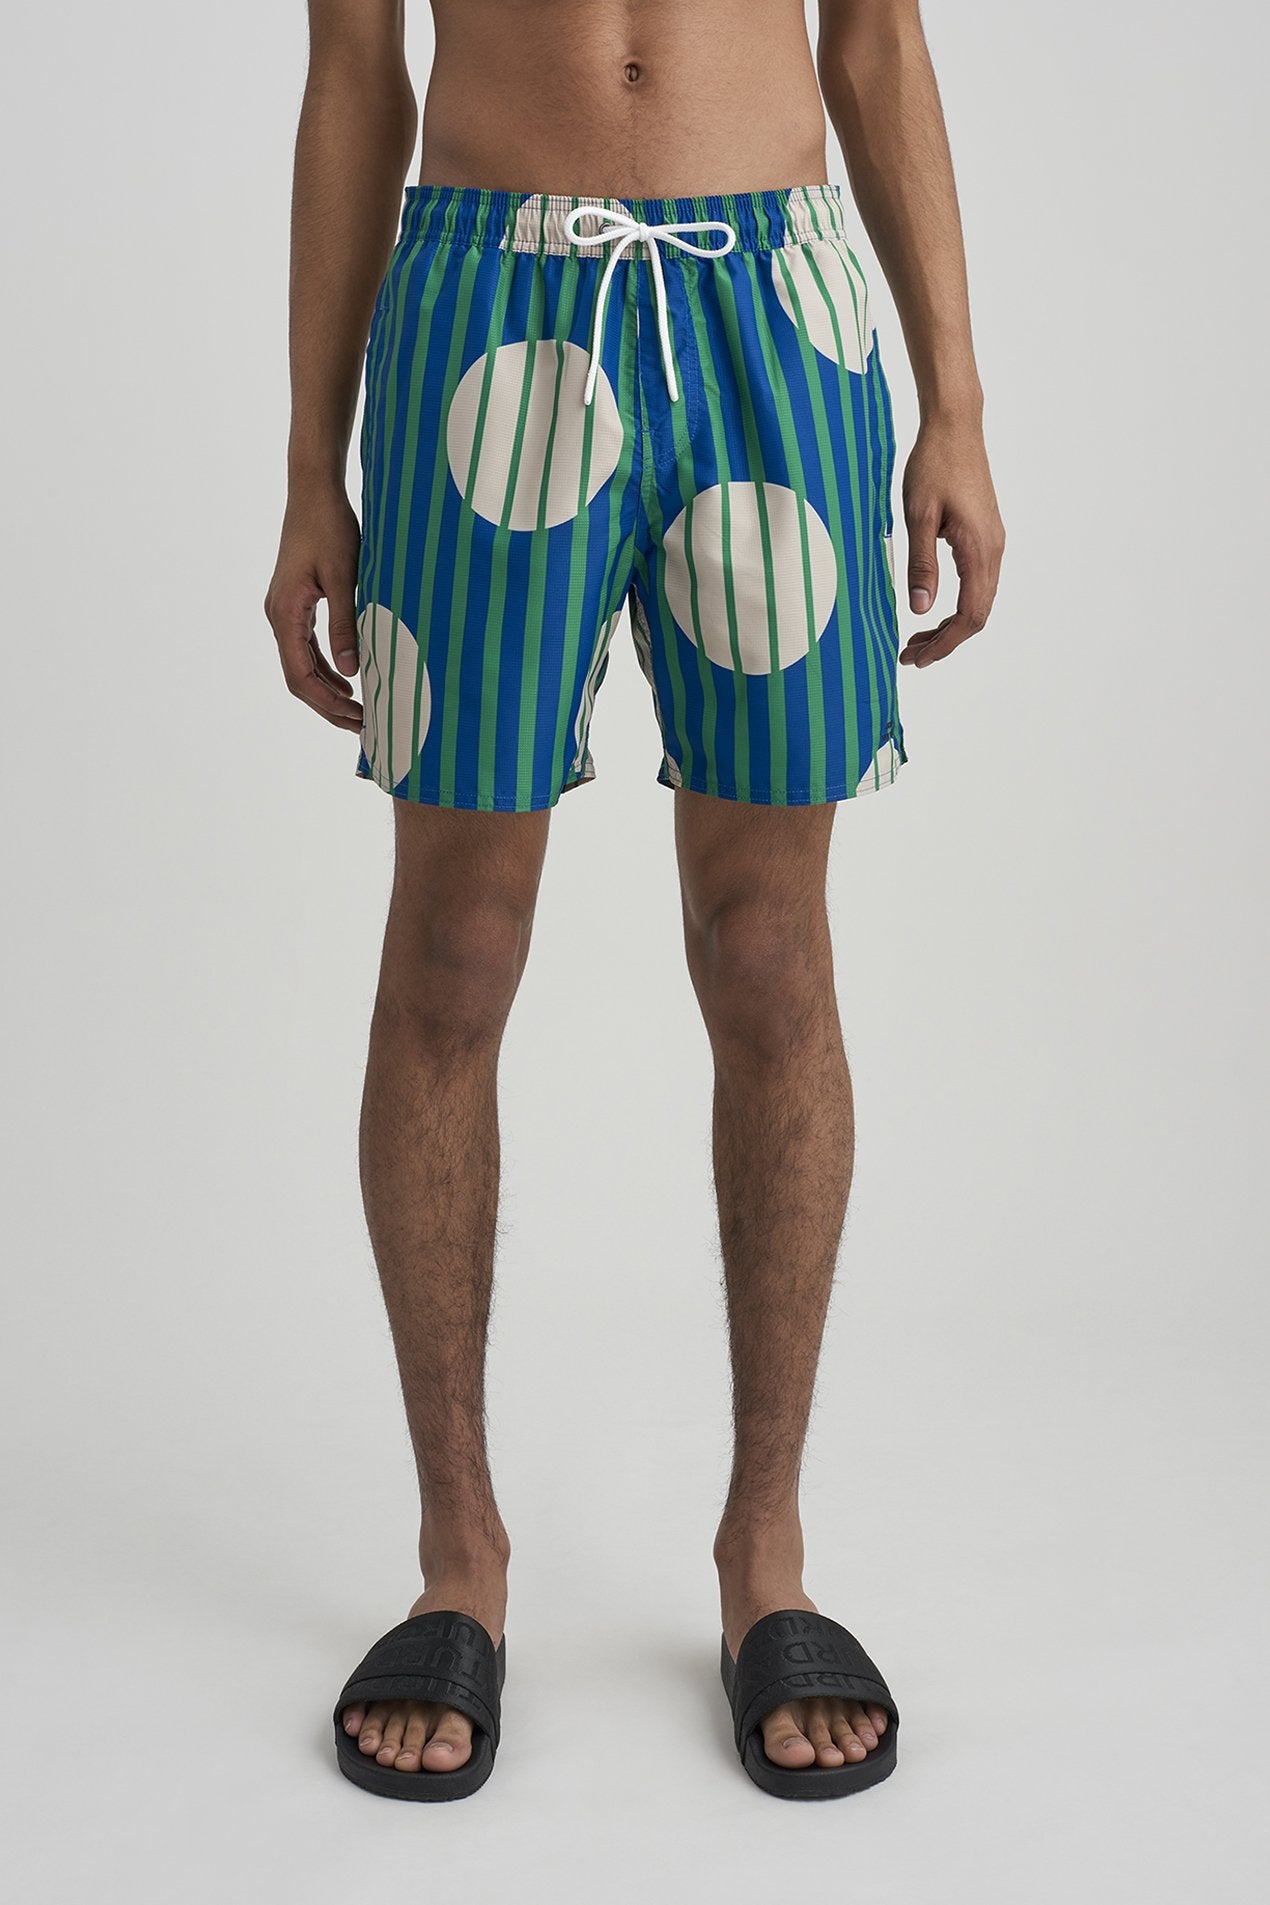 Timothy Striped Polka Dot Swim Short – Saturdays NYC